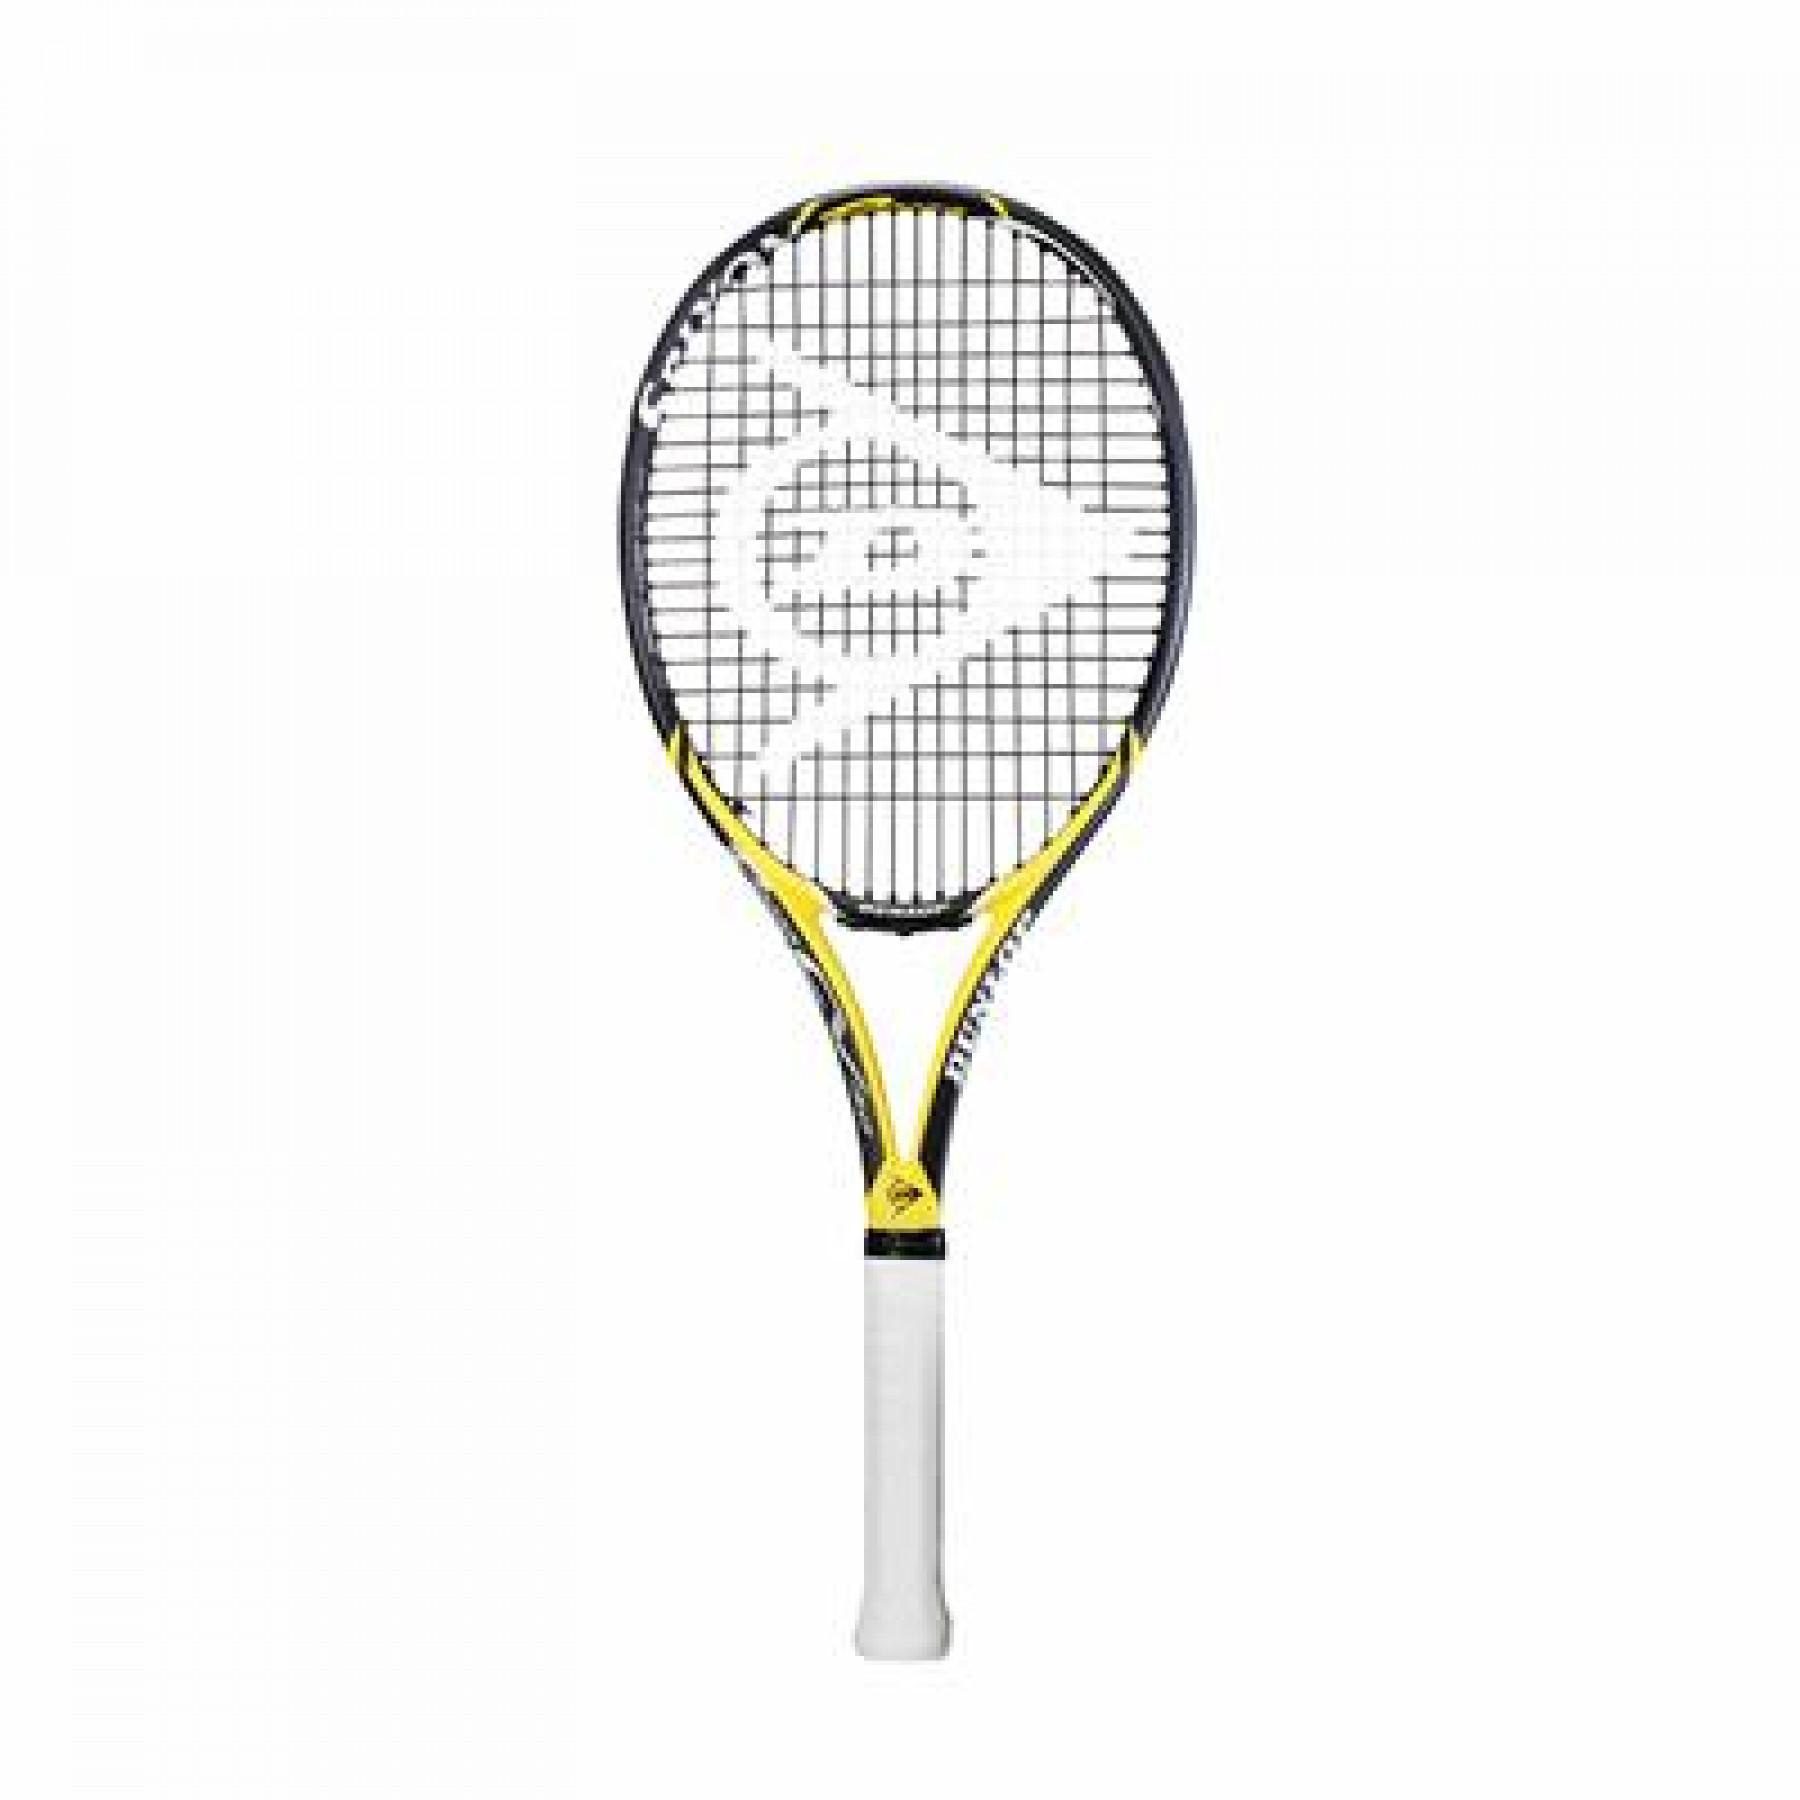 Raquete de ténis Dunlop Tf Srx 18Revo cv 3.0 G1